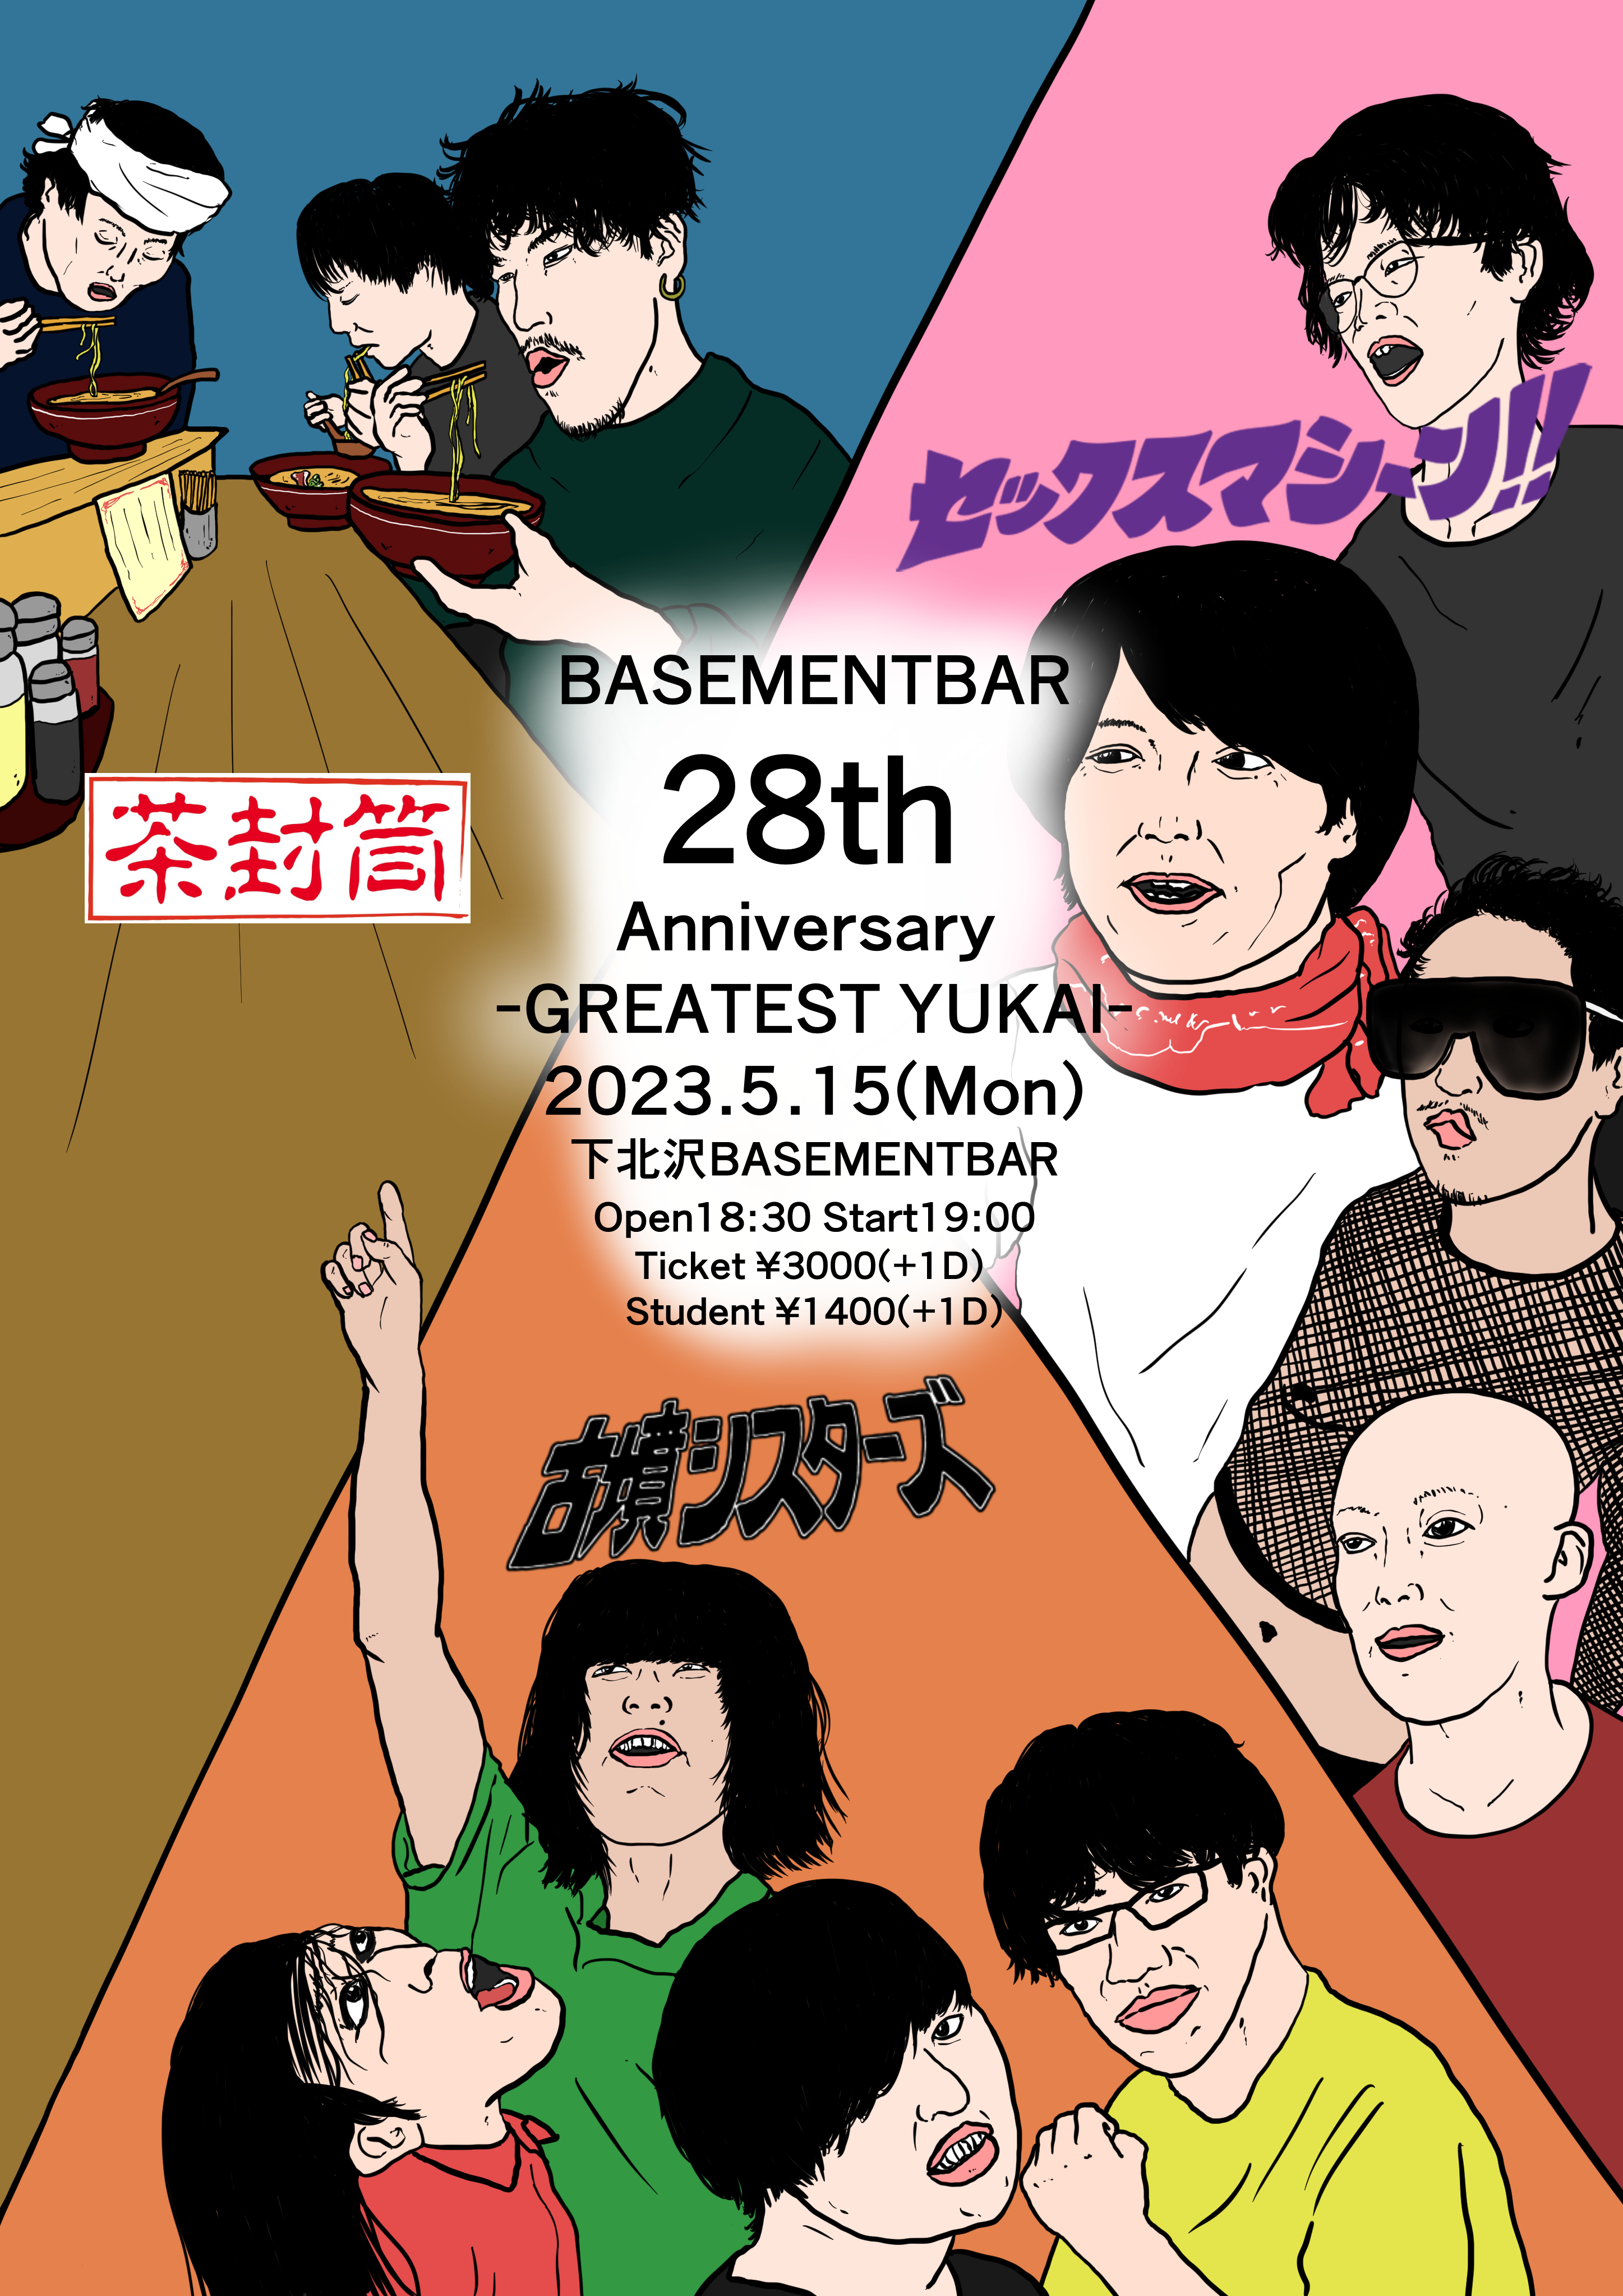 BASEMENTBAR 28th Anniversary -GREATEST YUKAI-